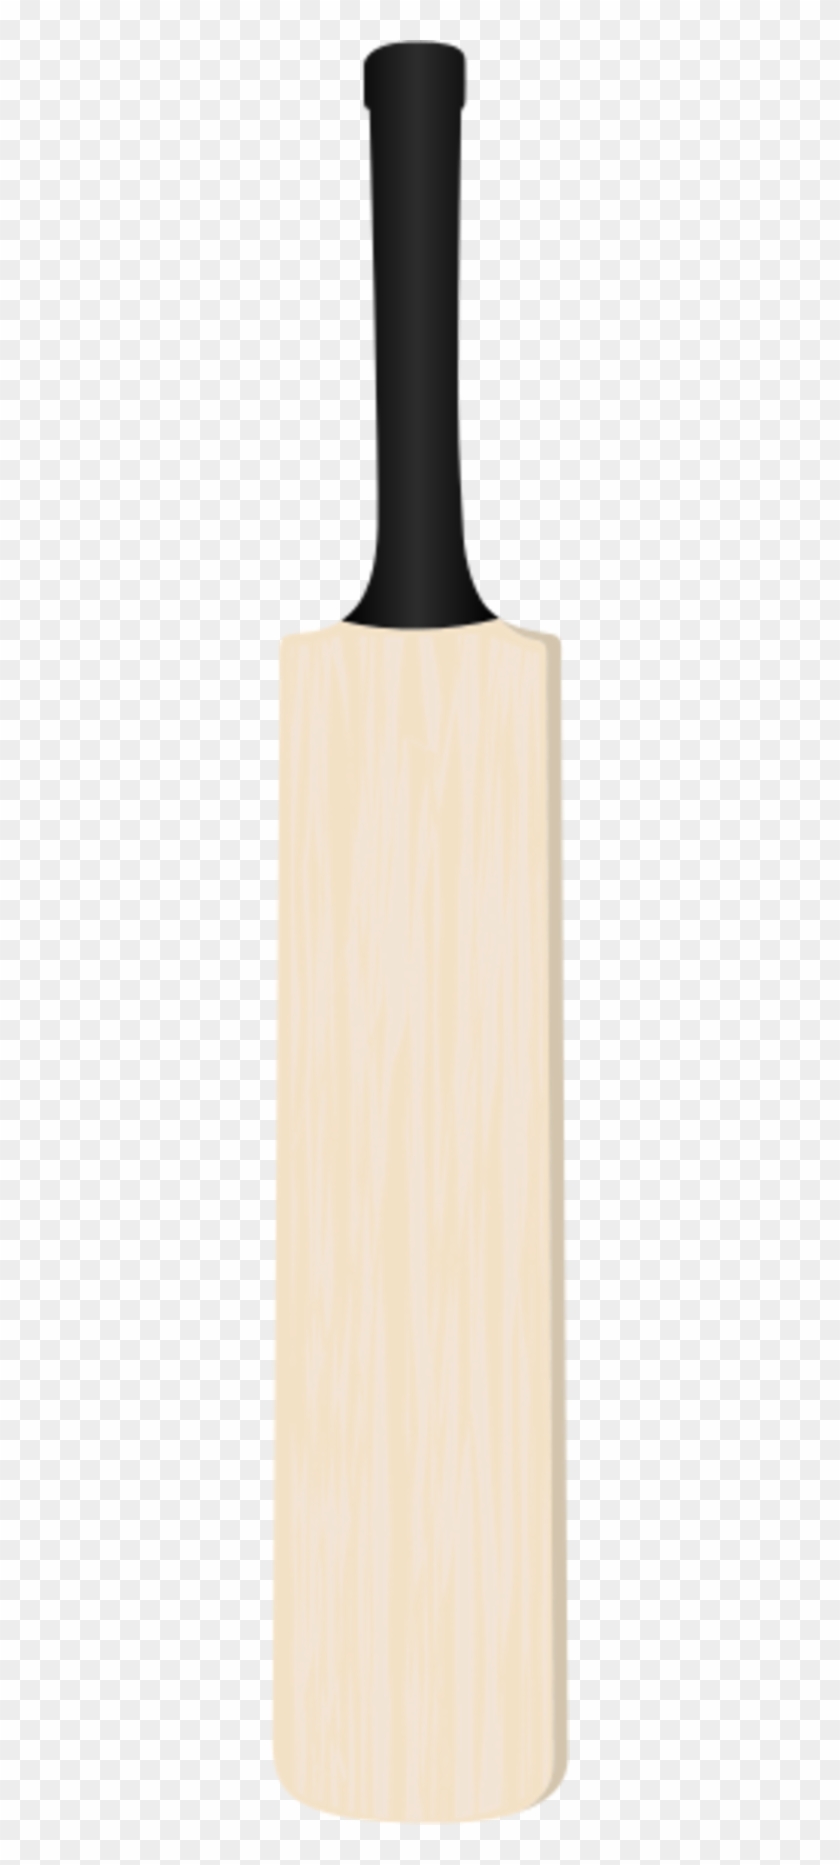 Cricket Bats Baseball Bats Clip Art - Cricket Bat Vector Png #1041325